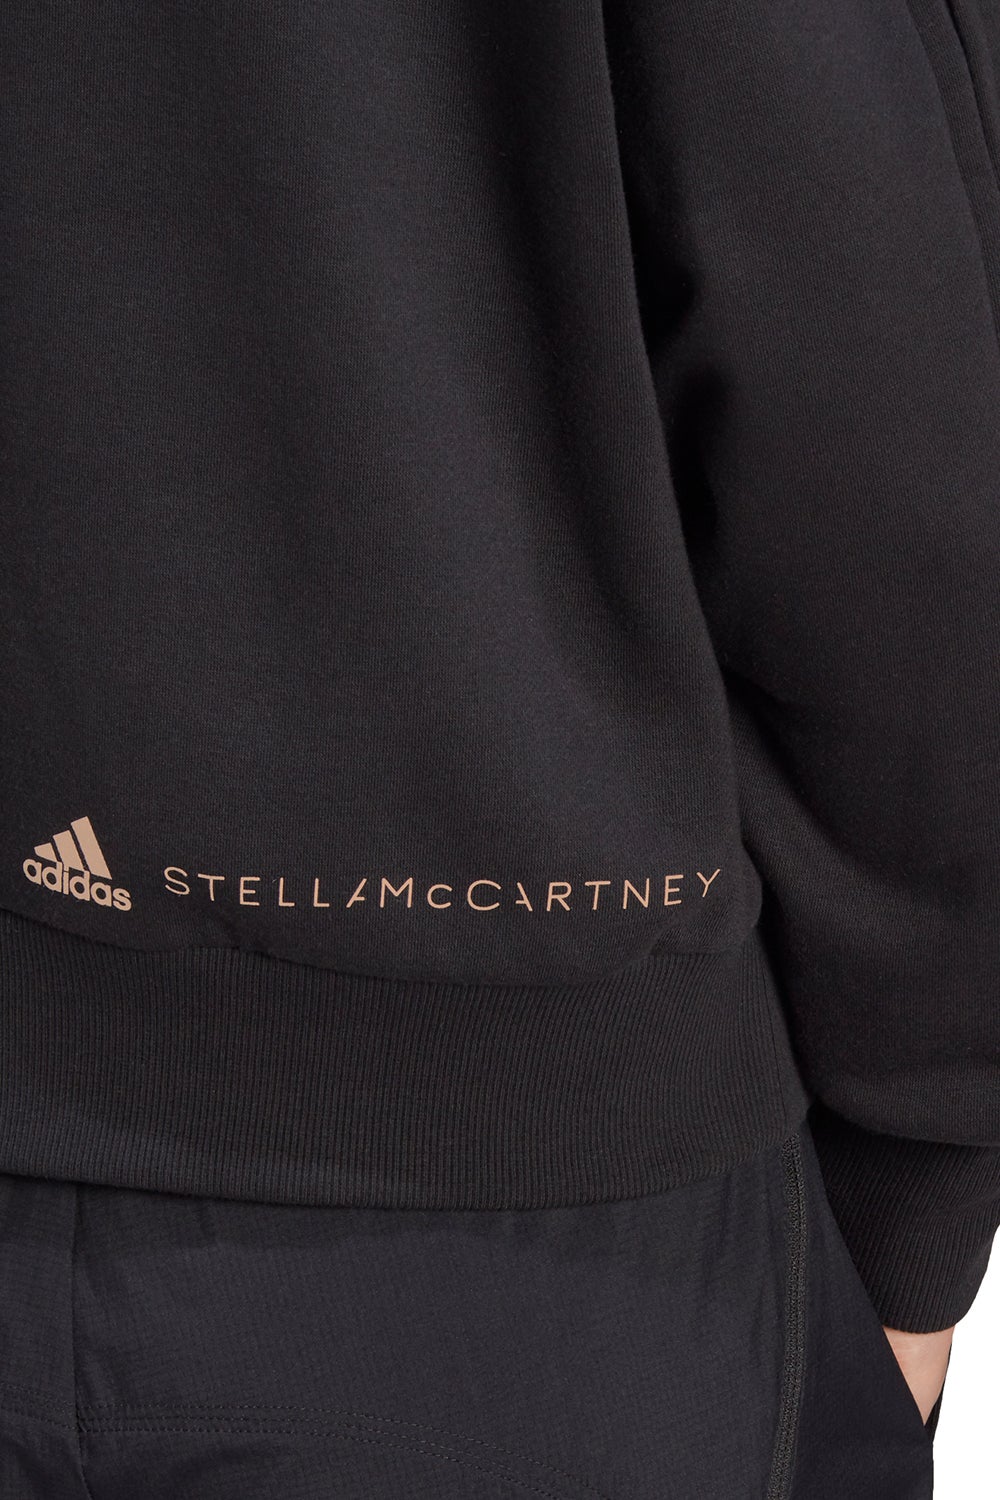 adidas by Stella McCartney Sweatshirt Black